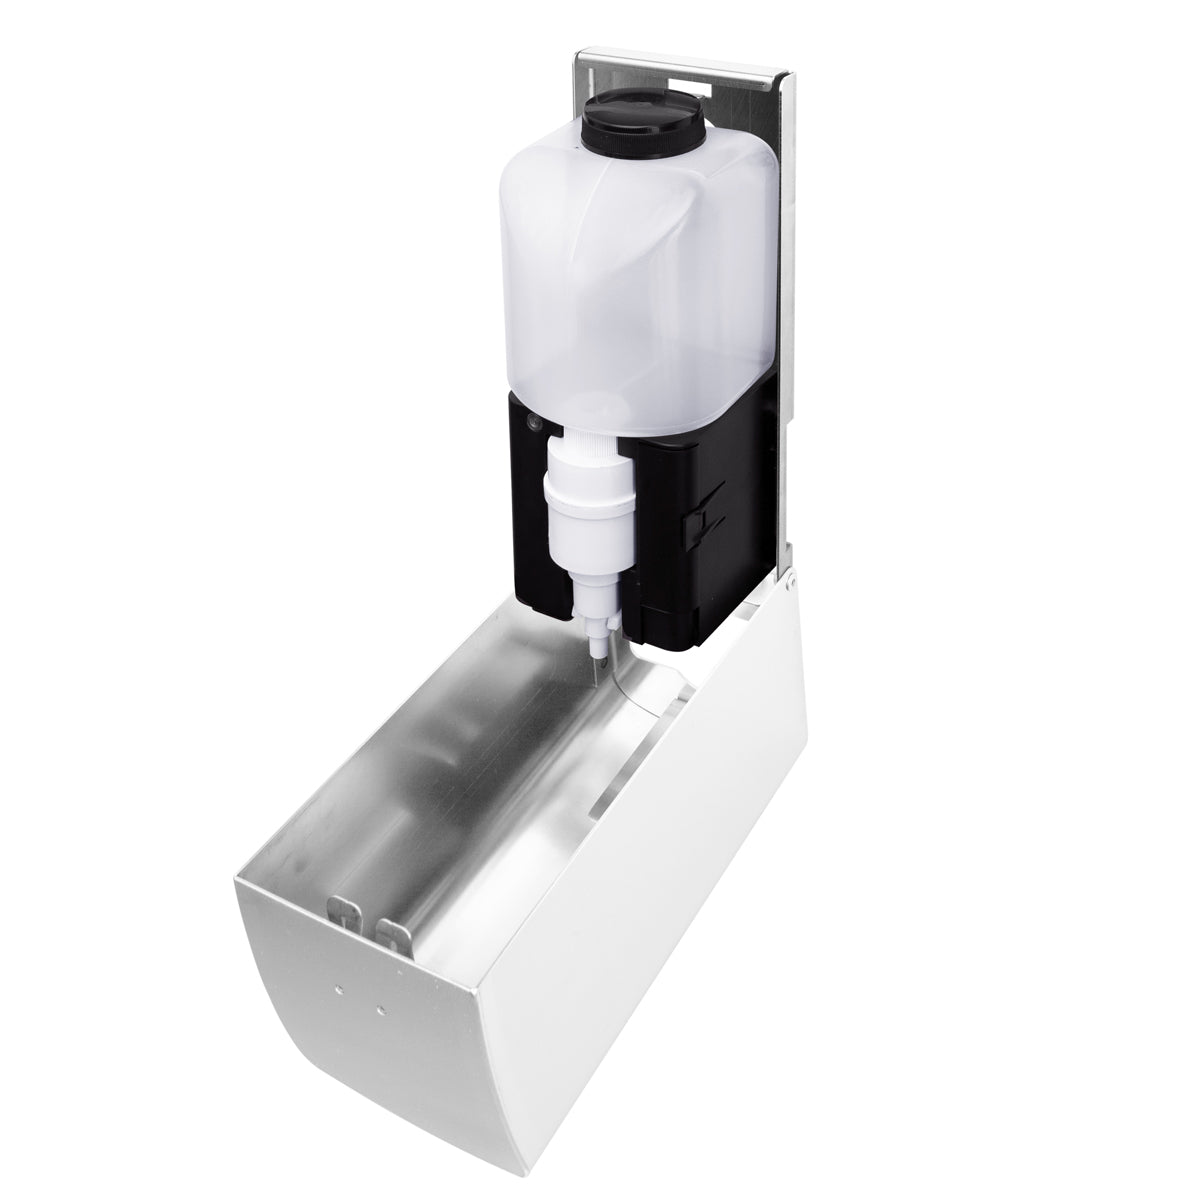 AIR -WOLF - toalettsete renere med sensor - 500 ml